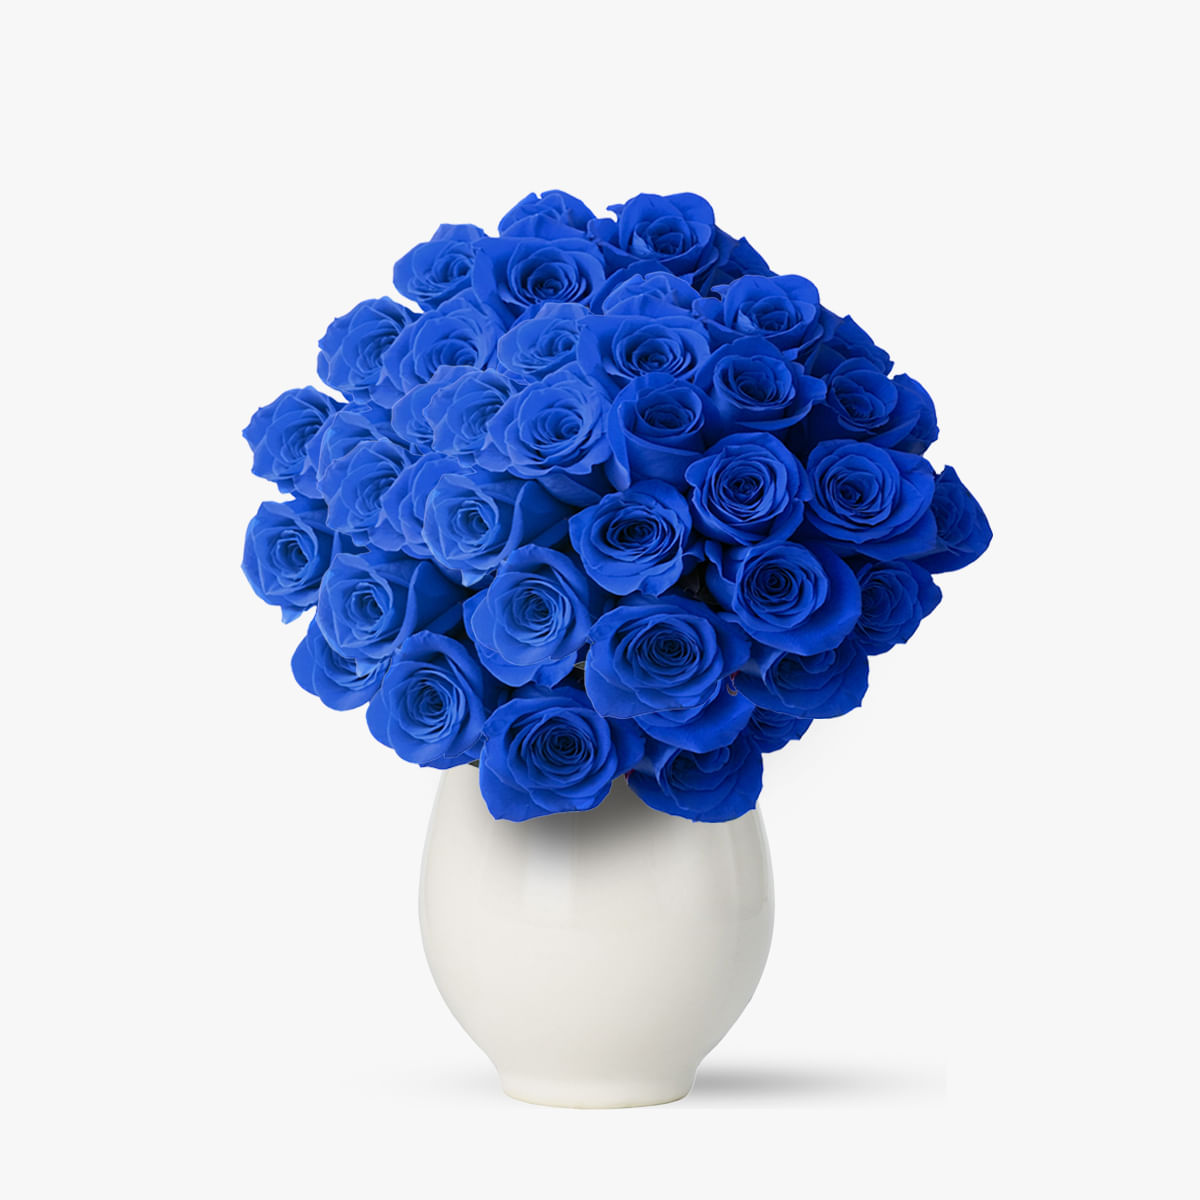 Buchet 101 trandafiri albastri – Standard 101